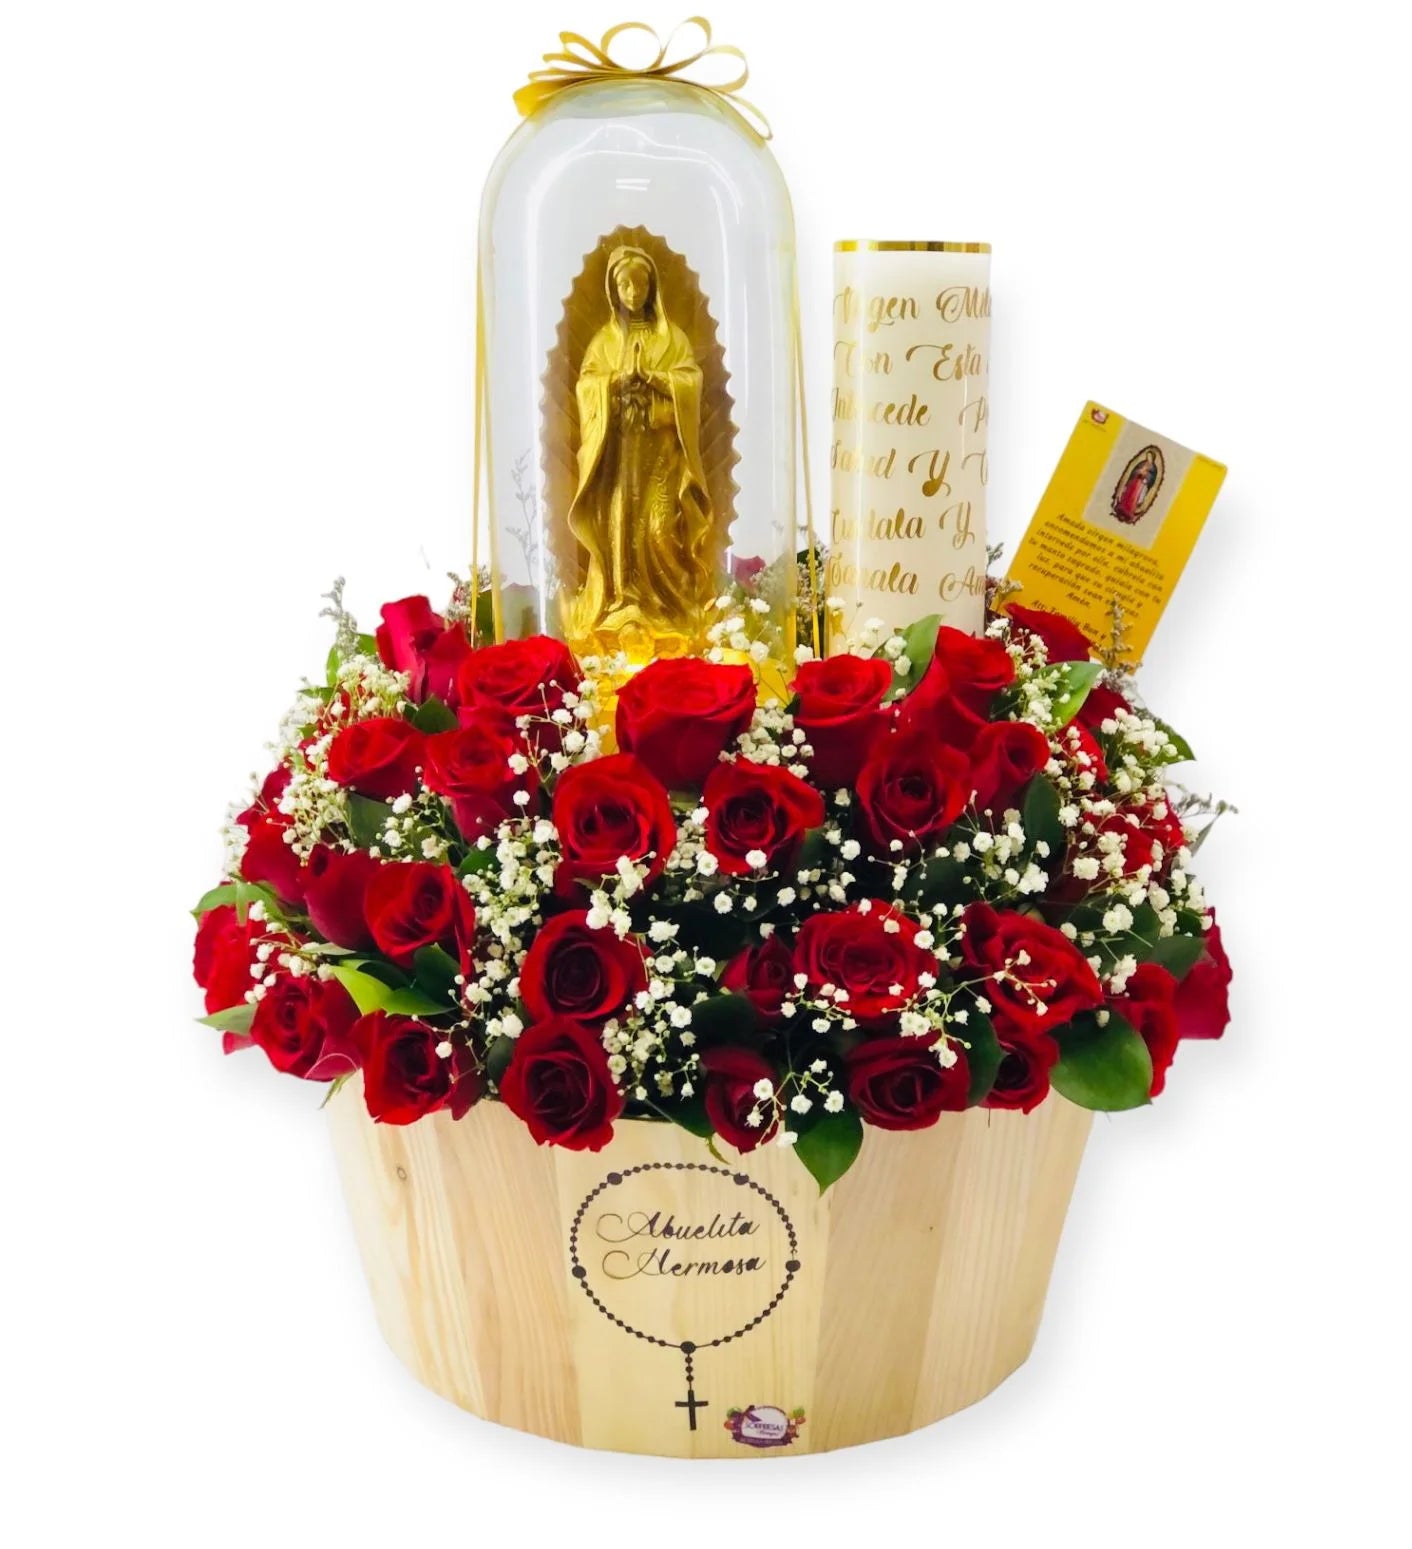 Bonche buchón de 50 rosas ychocolates Ferrero y tu corona 👑 de regalo  💝😍💐, By D'ecor Alethia Event Planner